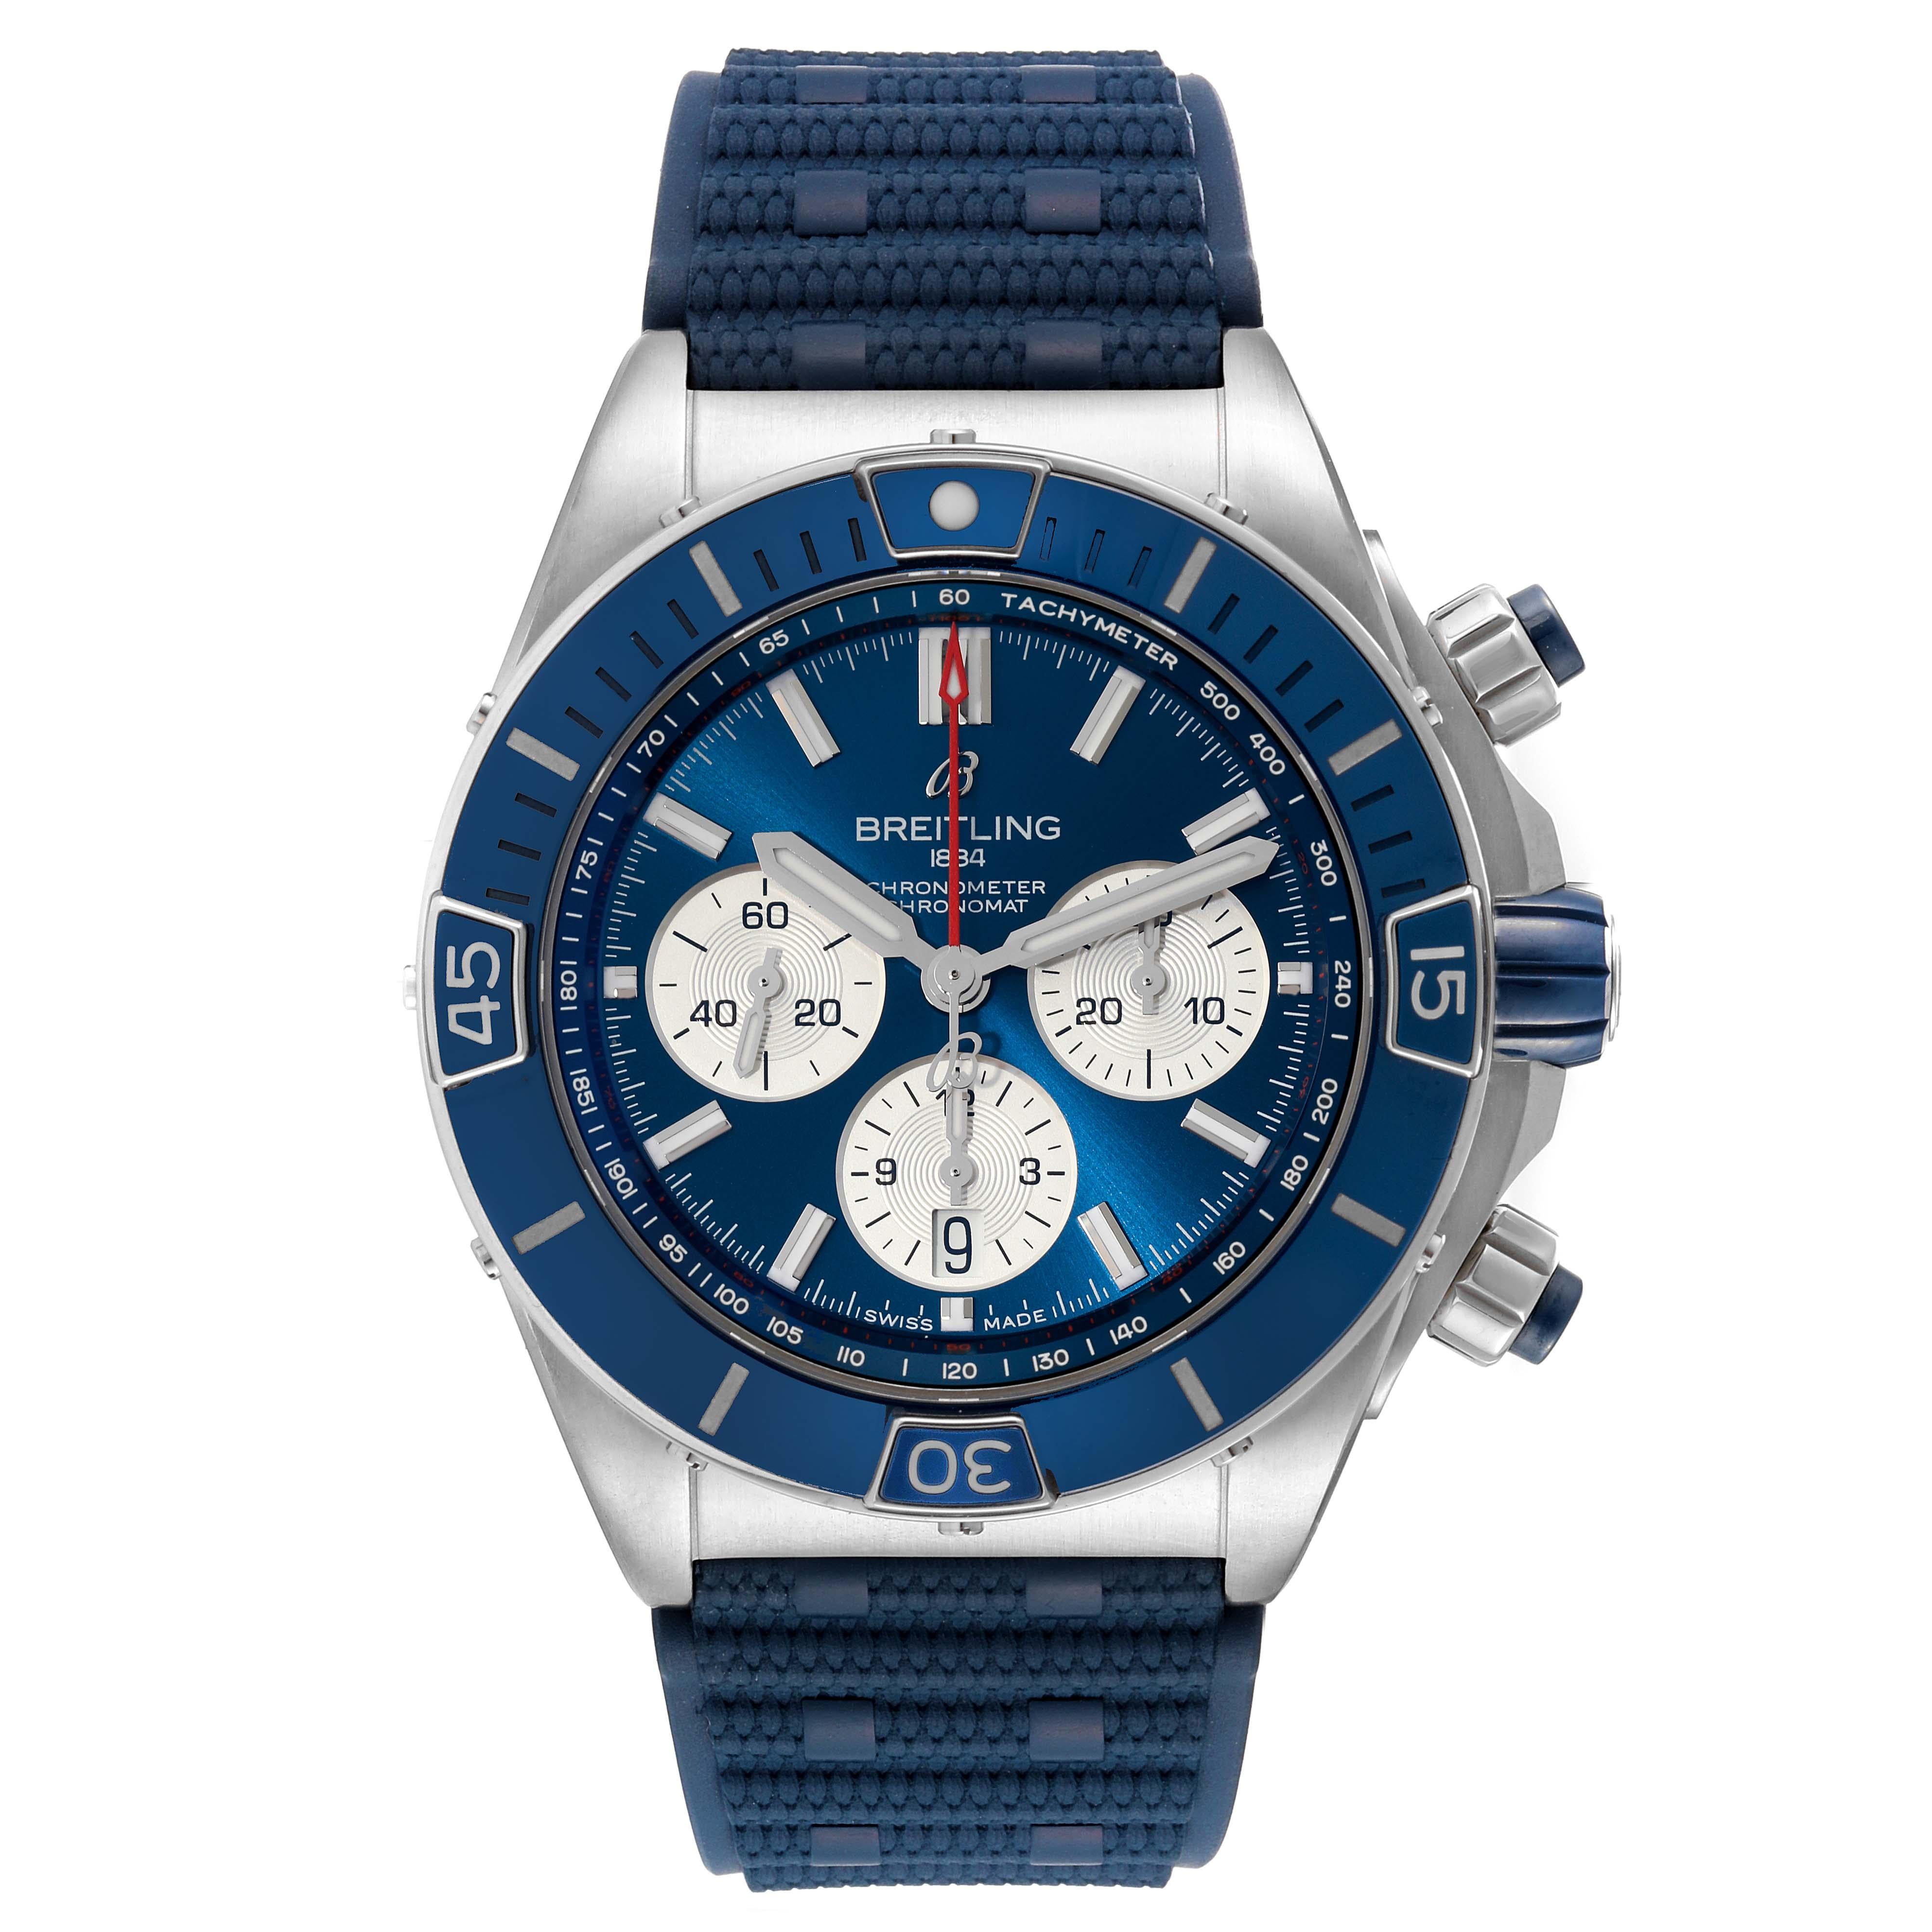 Breitling Super Chronomat B01 Blue Dial Steel Mens Watch AB0136 Box Card. Mouvement automatique à remontage automatique, officiellement certifié chronomètre. Fonction chronographe. Boîtier en acier inoxydable de 44.0 mm de diamètre avec couronne et